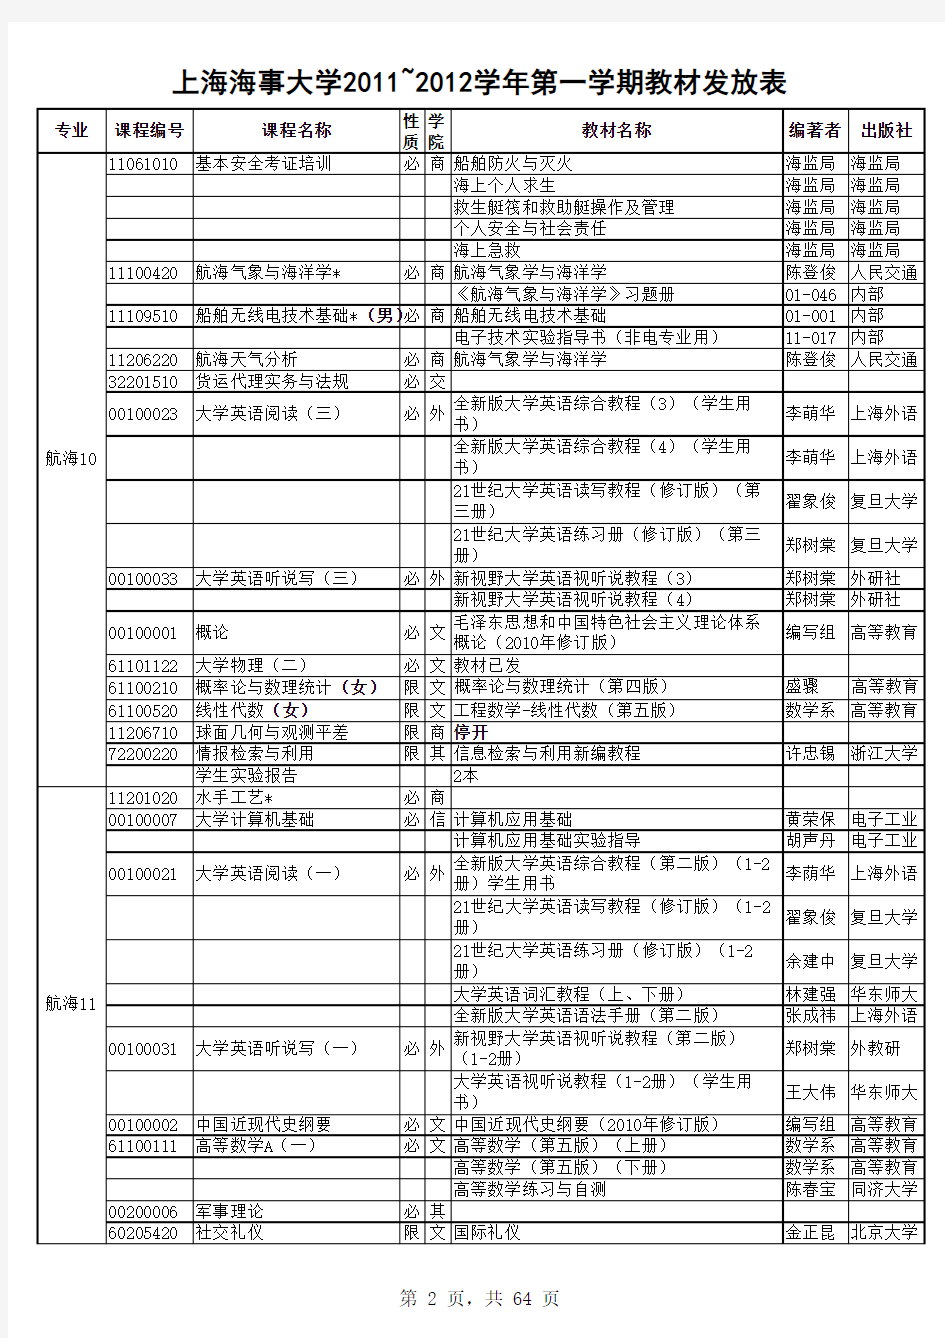 上海海事大学 2011-2012-1教材发放表